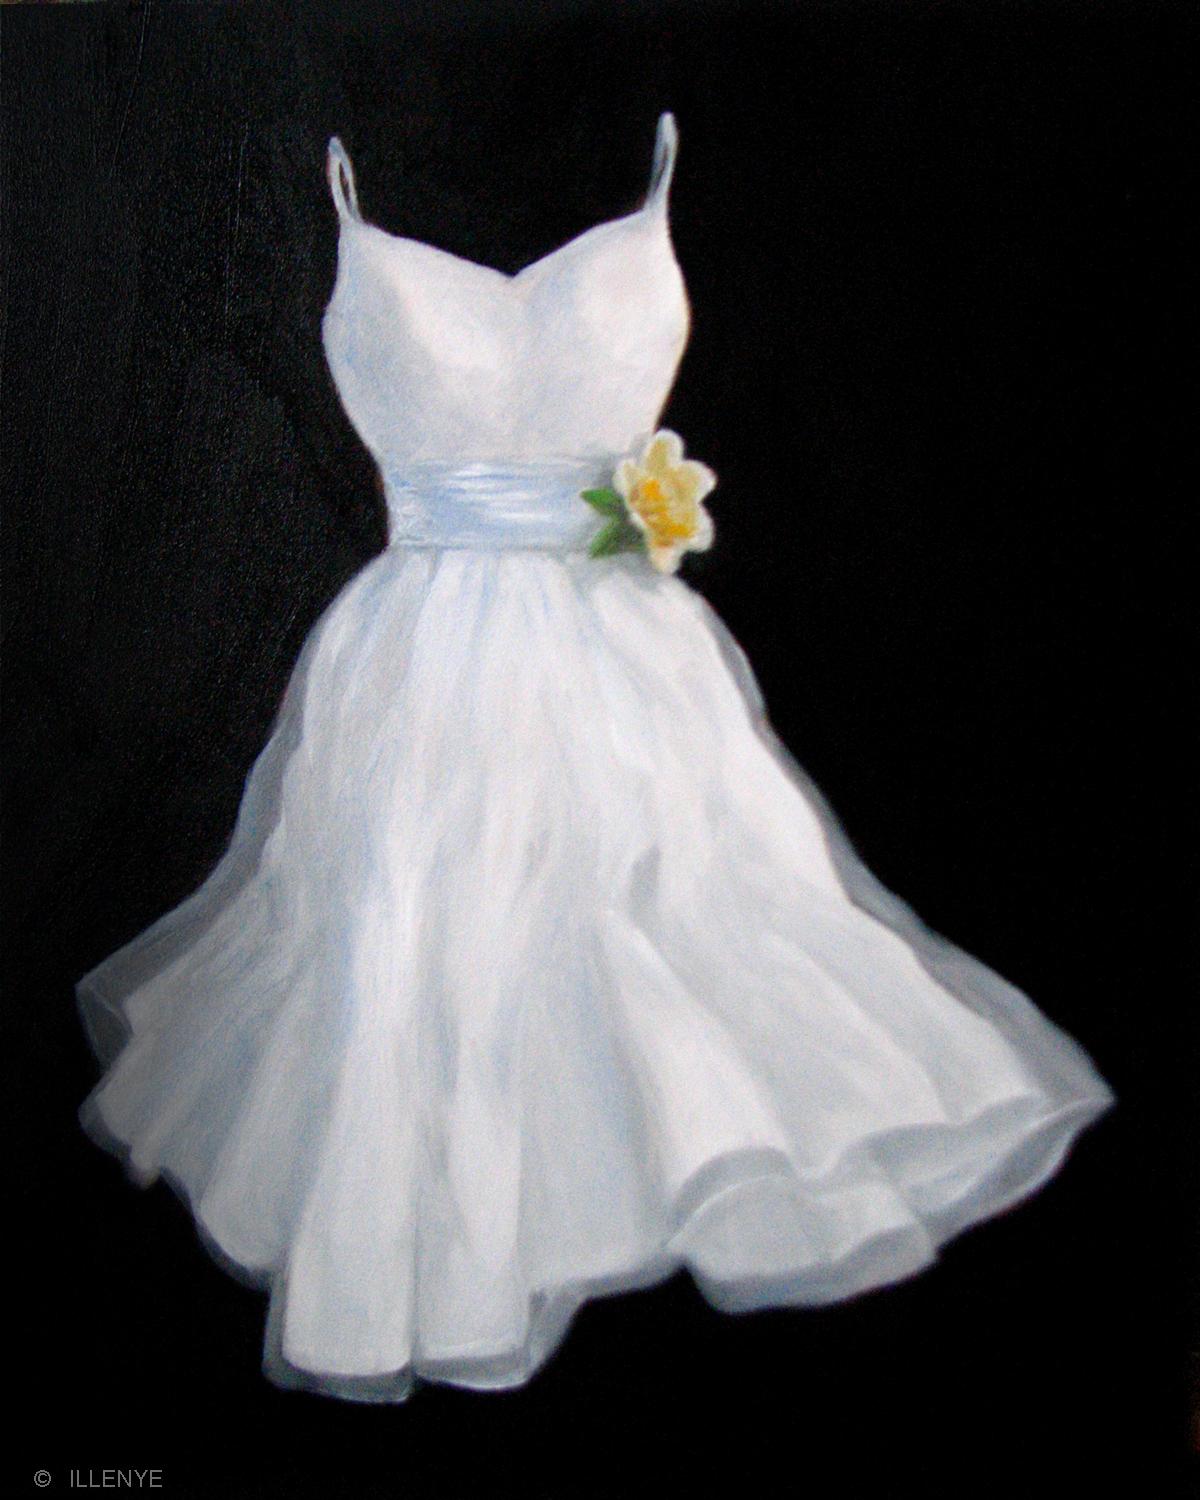 A White Dress